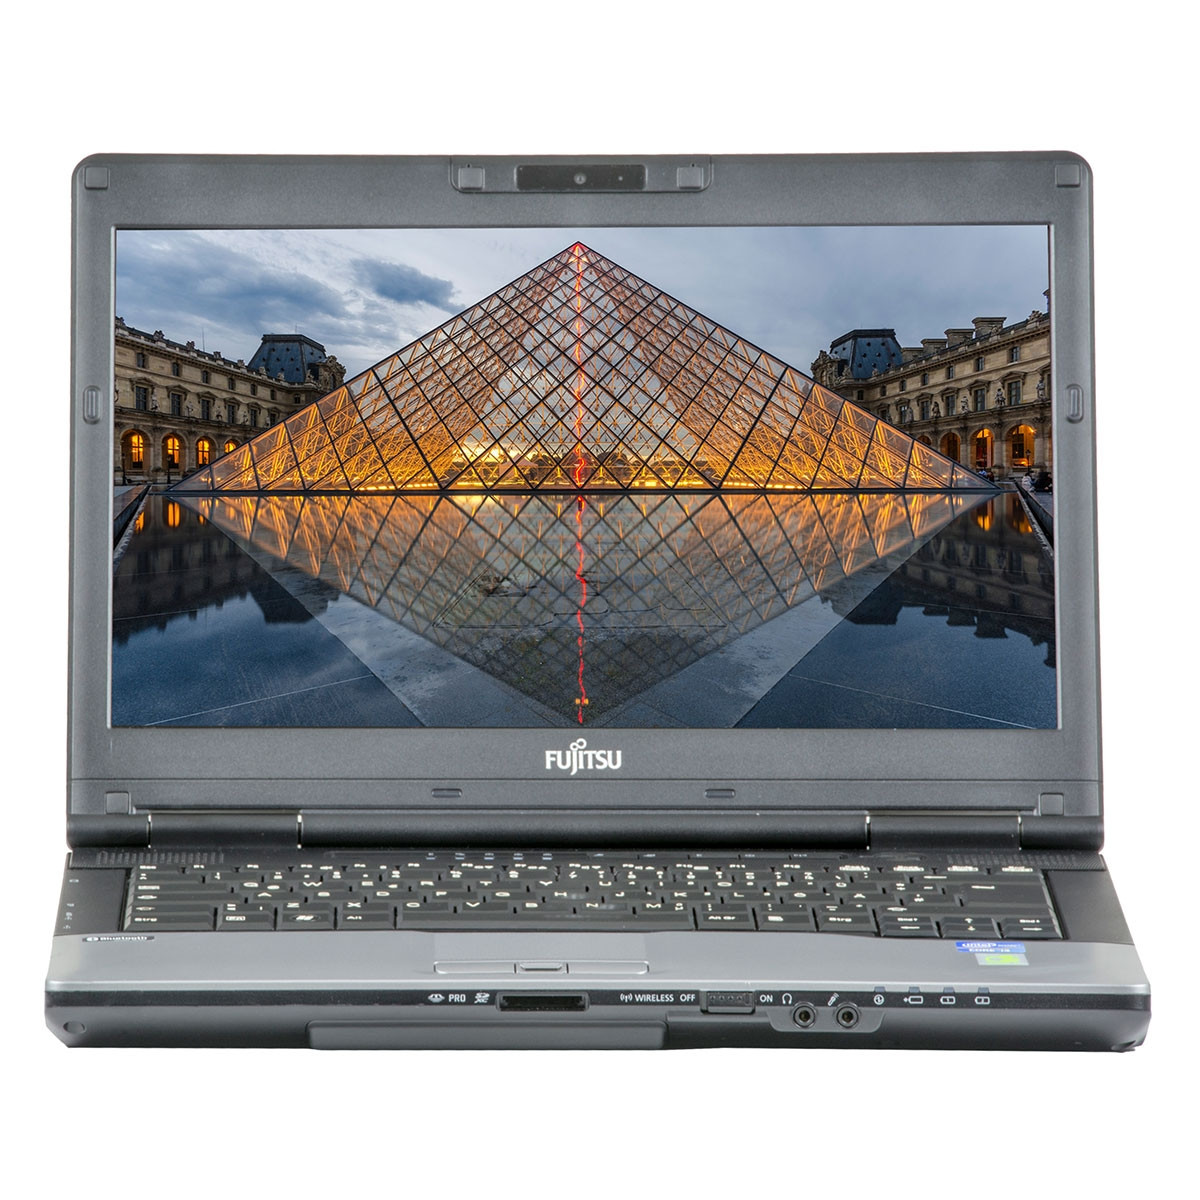 Laptop FUJITSU SIEMENS S782, Intel Core i7-3612QM 2.10GHz, 4GB DDR3, 320GB SATA, DVD-RW, 14 Inch, Webcam